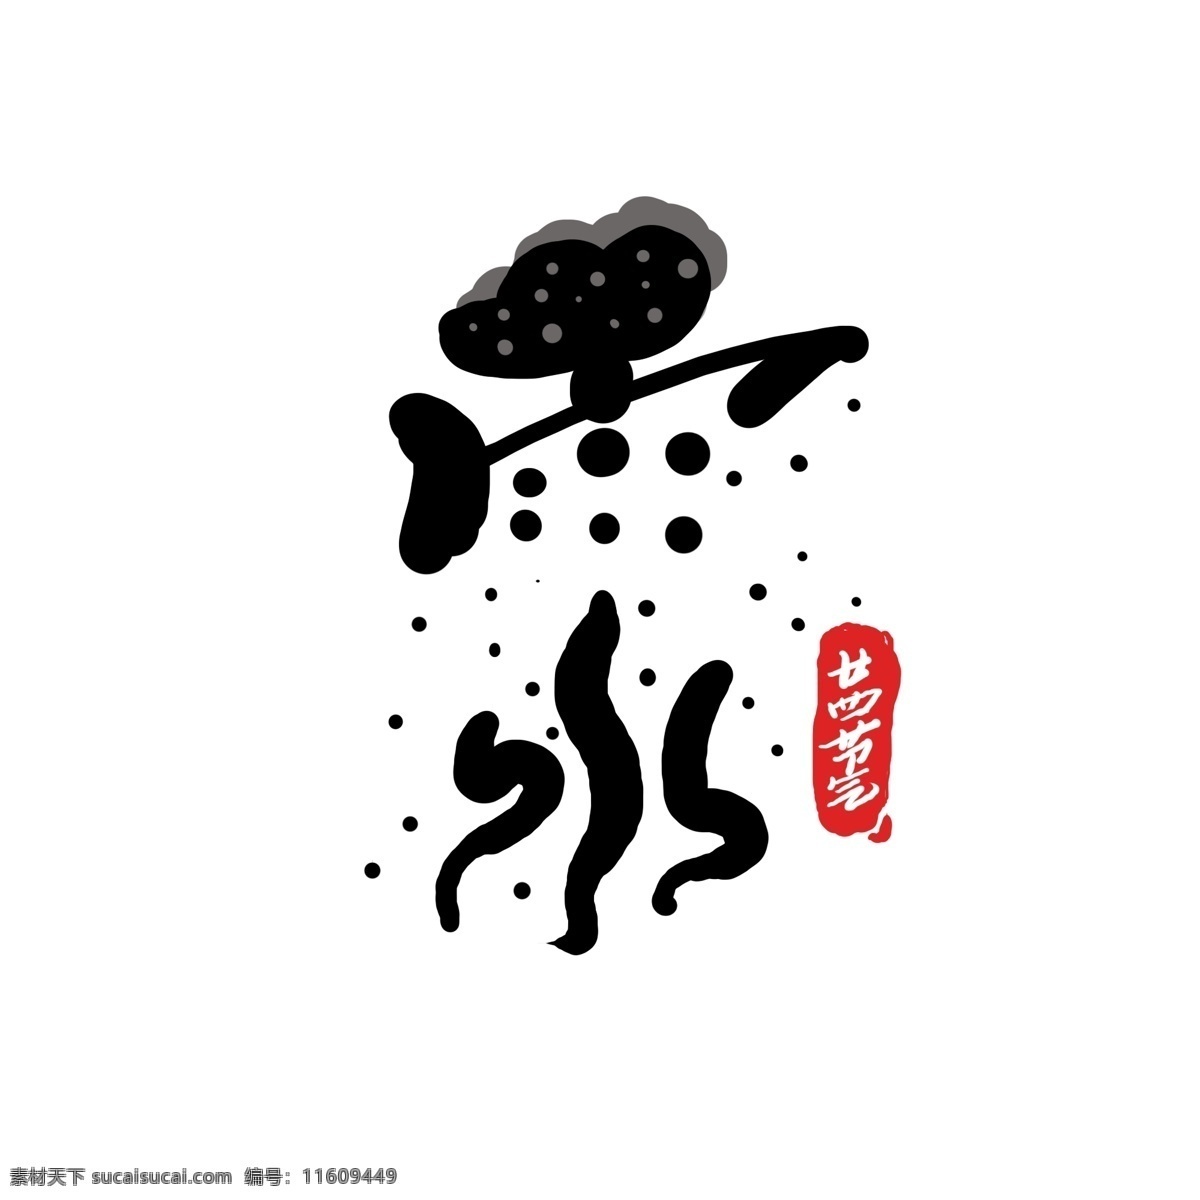 原创 节气 雨水 艺术 字 二十四节气 中国风 手写 书法 字体设计 原创字体 24节气 艺术字 雨水艺术字